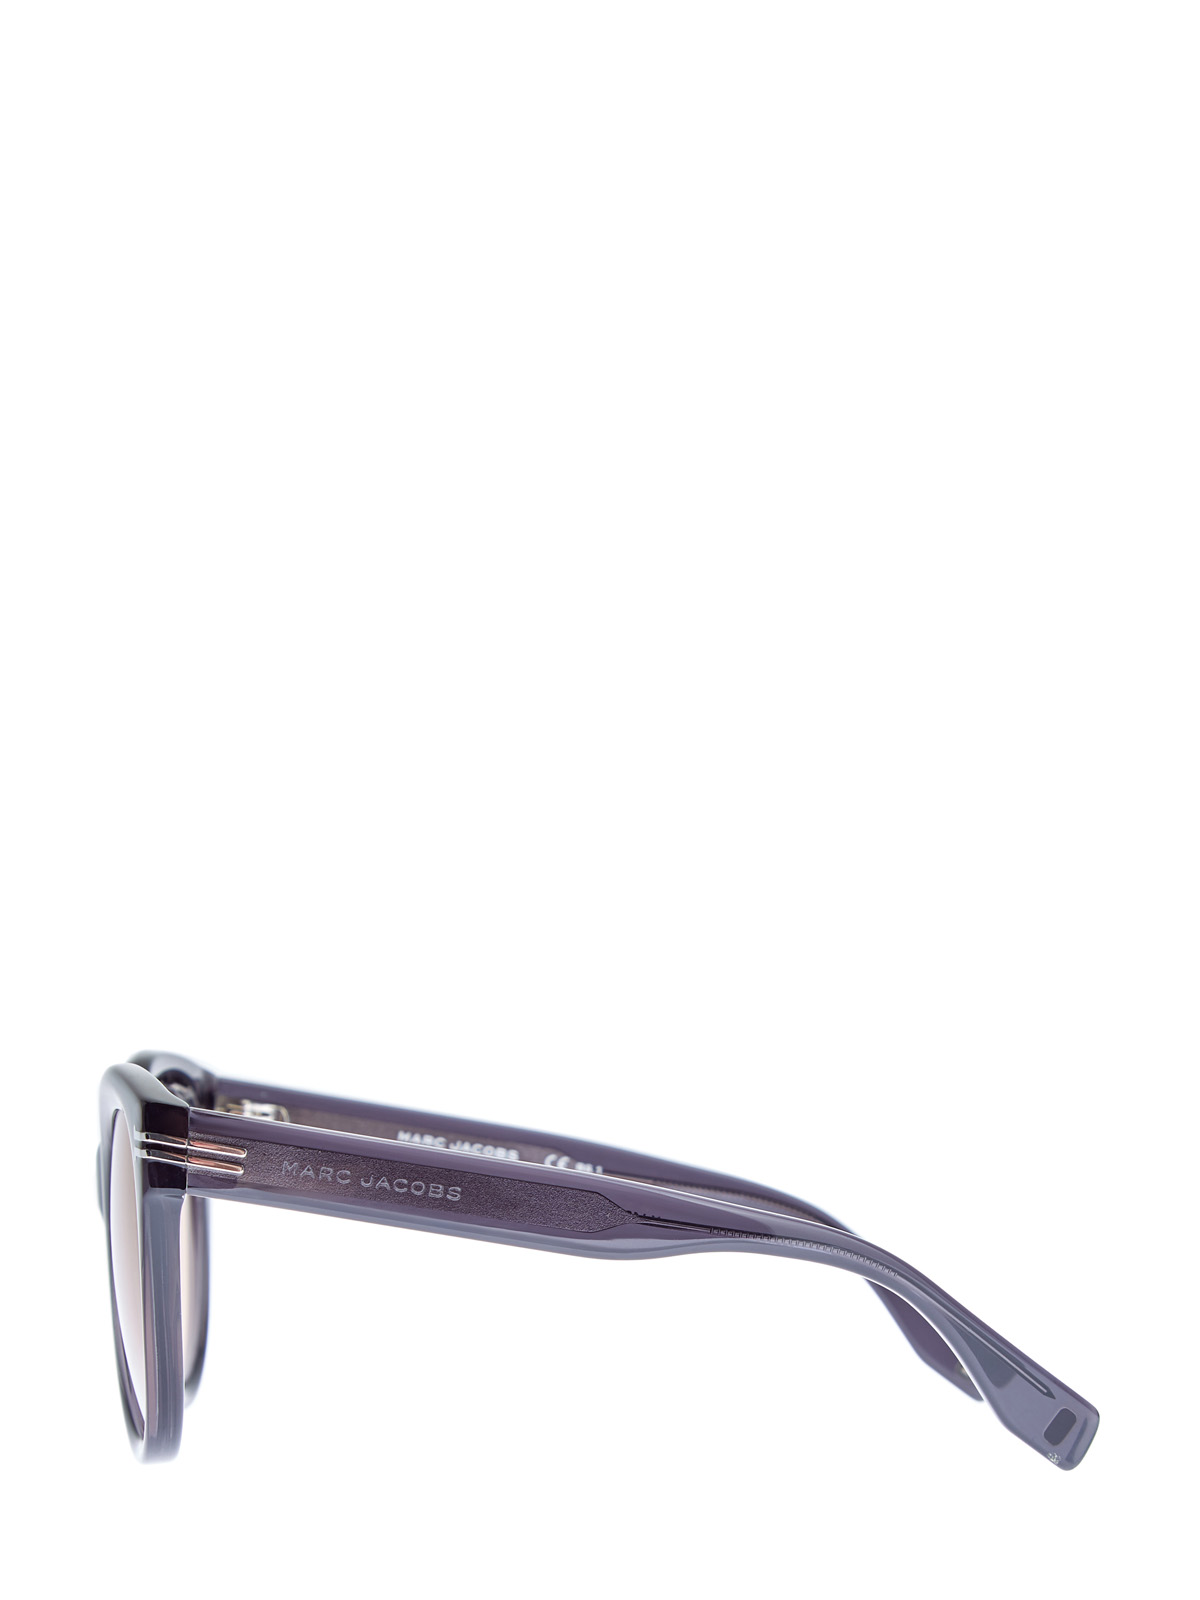 Солнцезащитные очки с мерцающими дужками и монограммой MARC JACOBS (sunglasses), цвет черный, размер S;M;L - фото 3